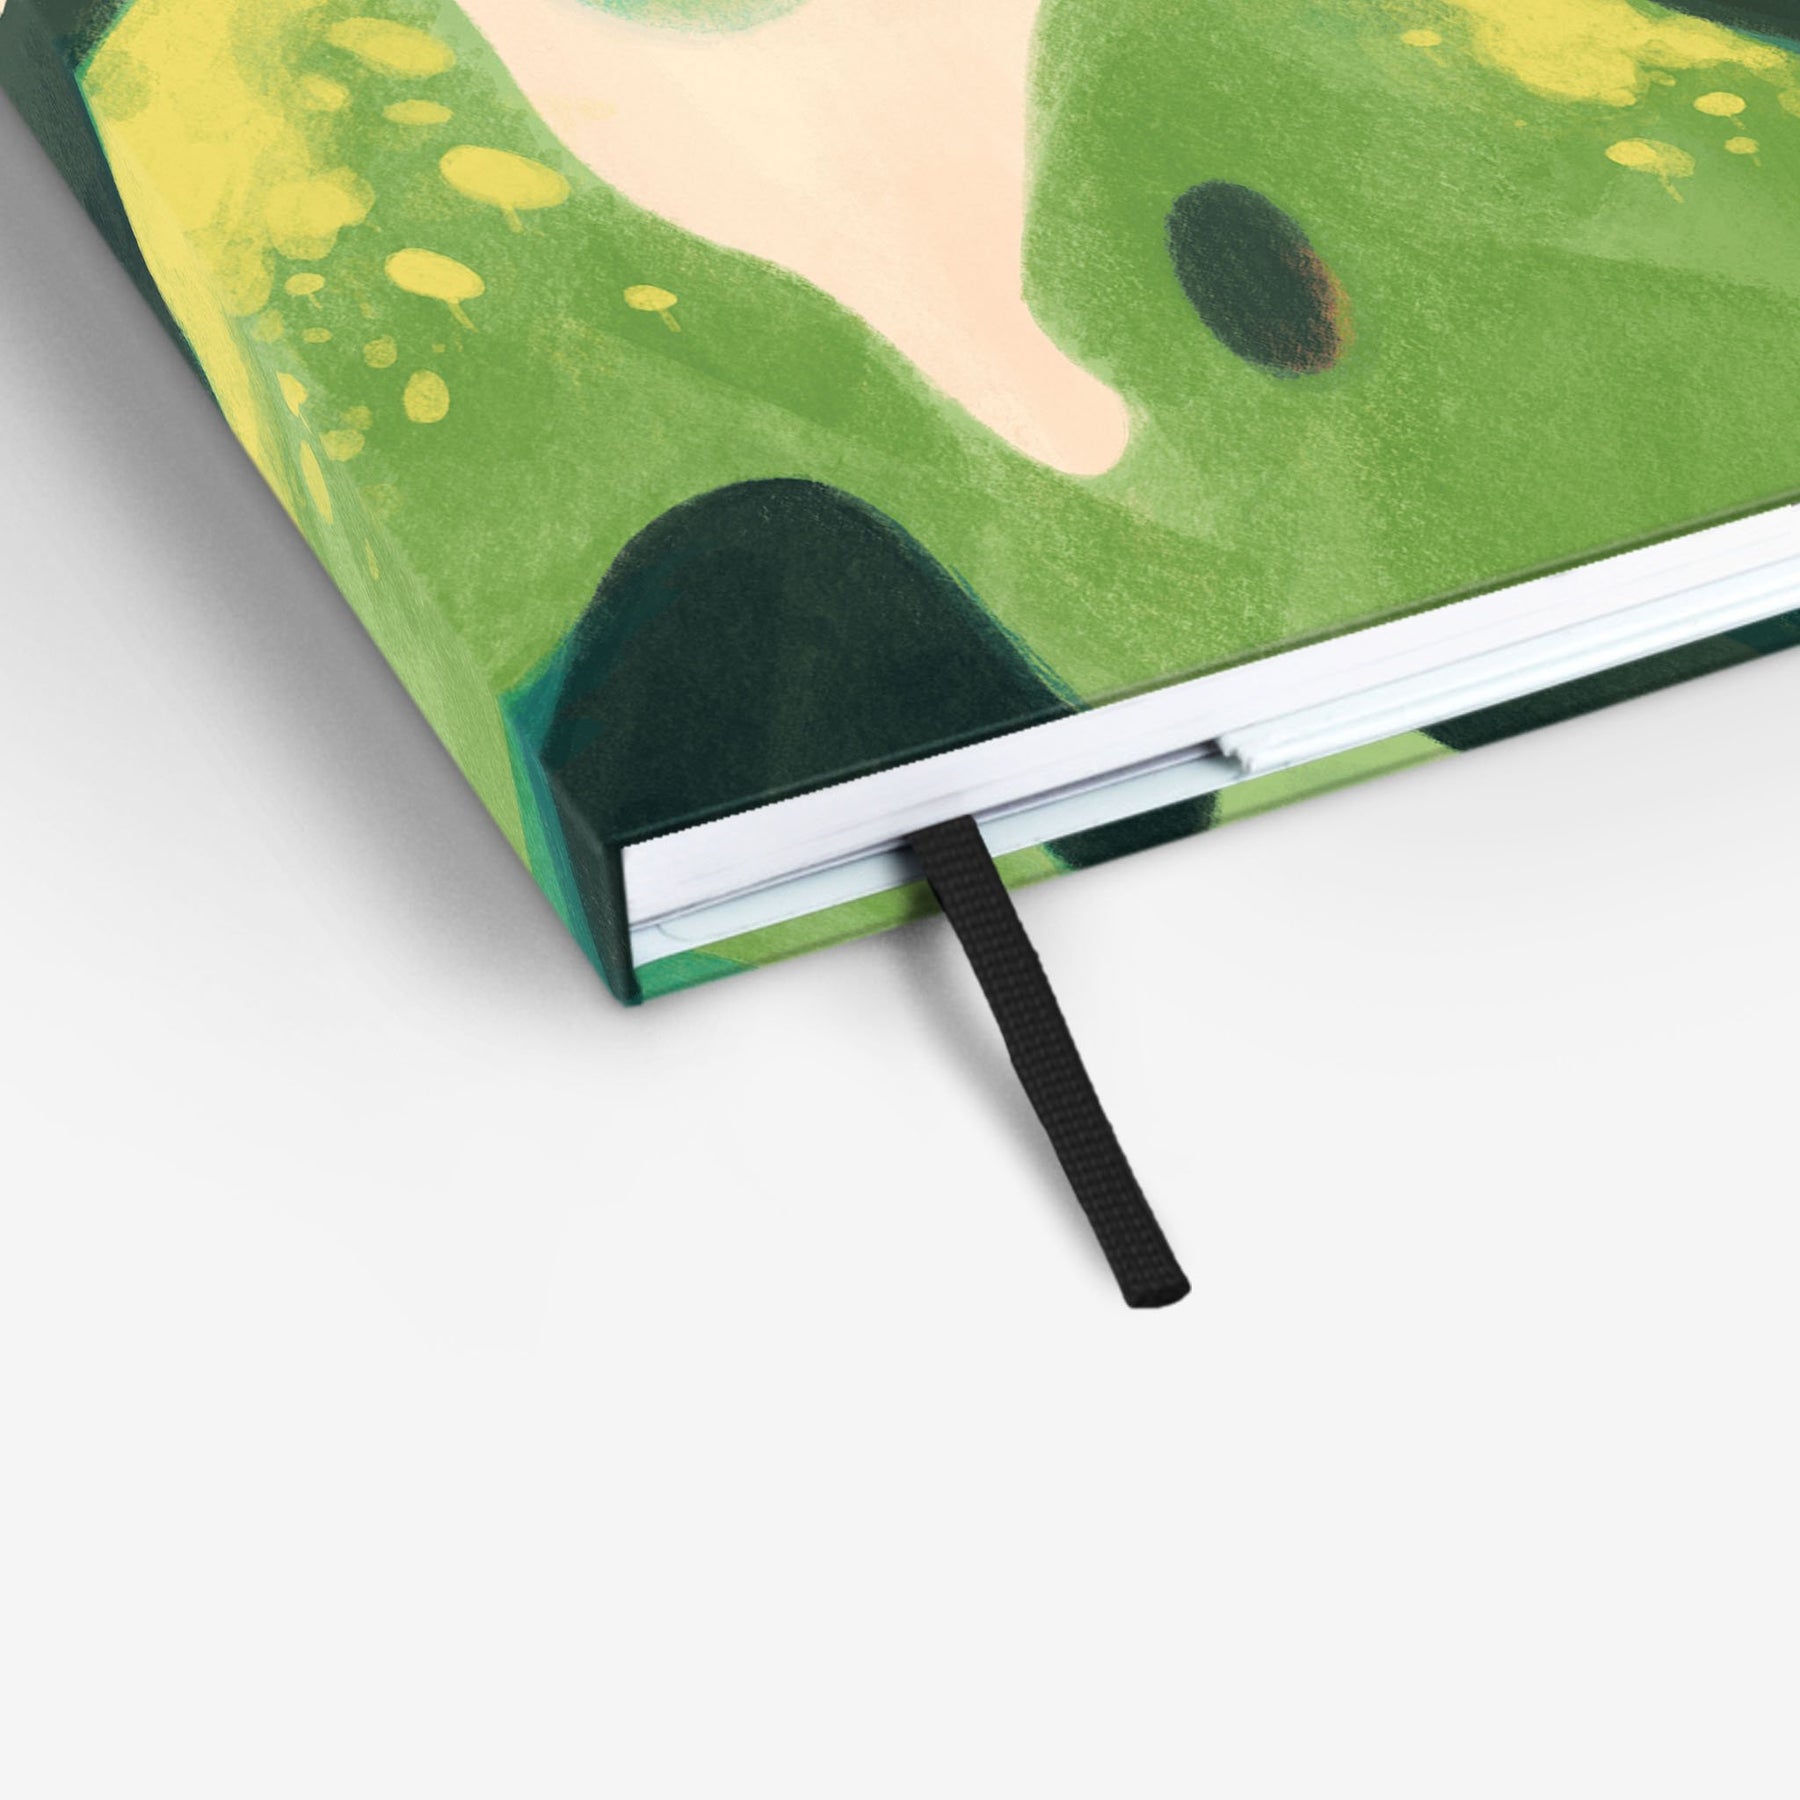 Moss Light Threadbound Notebook